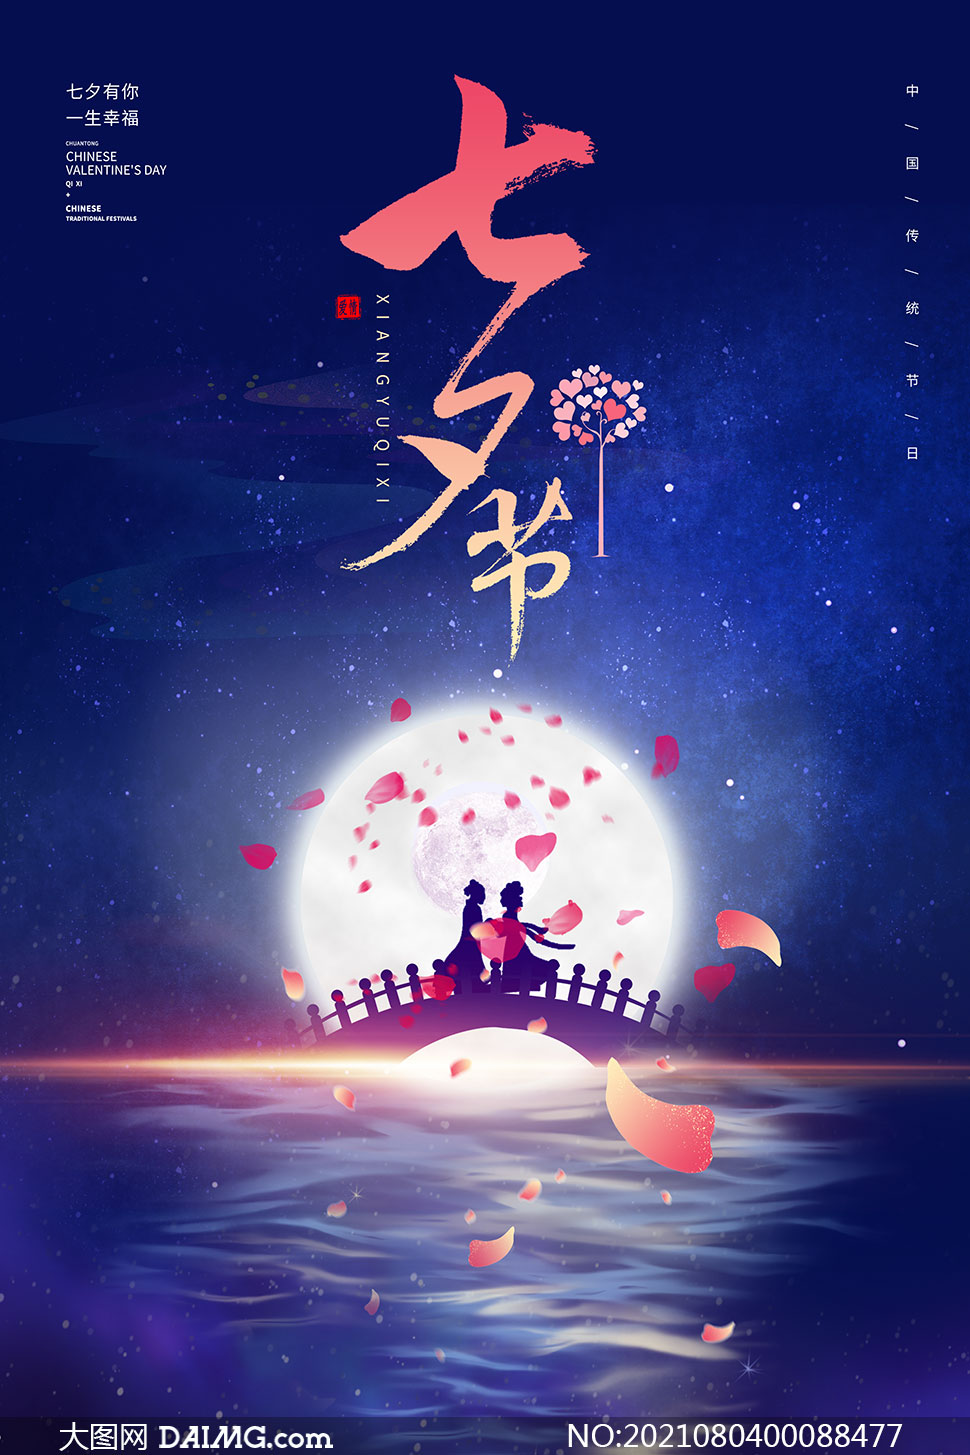 七夕情人节活动海报设计psd素材